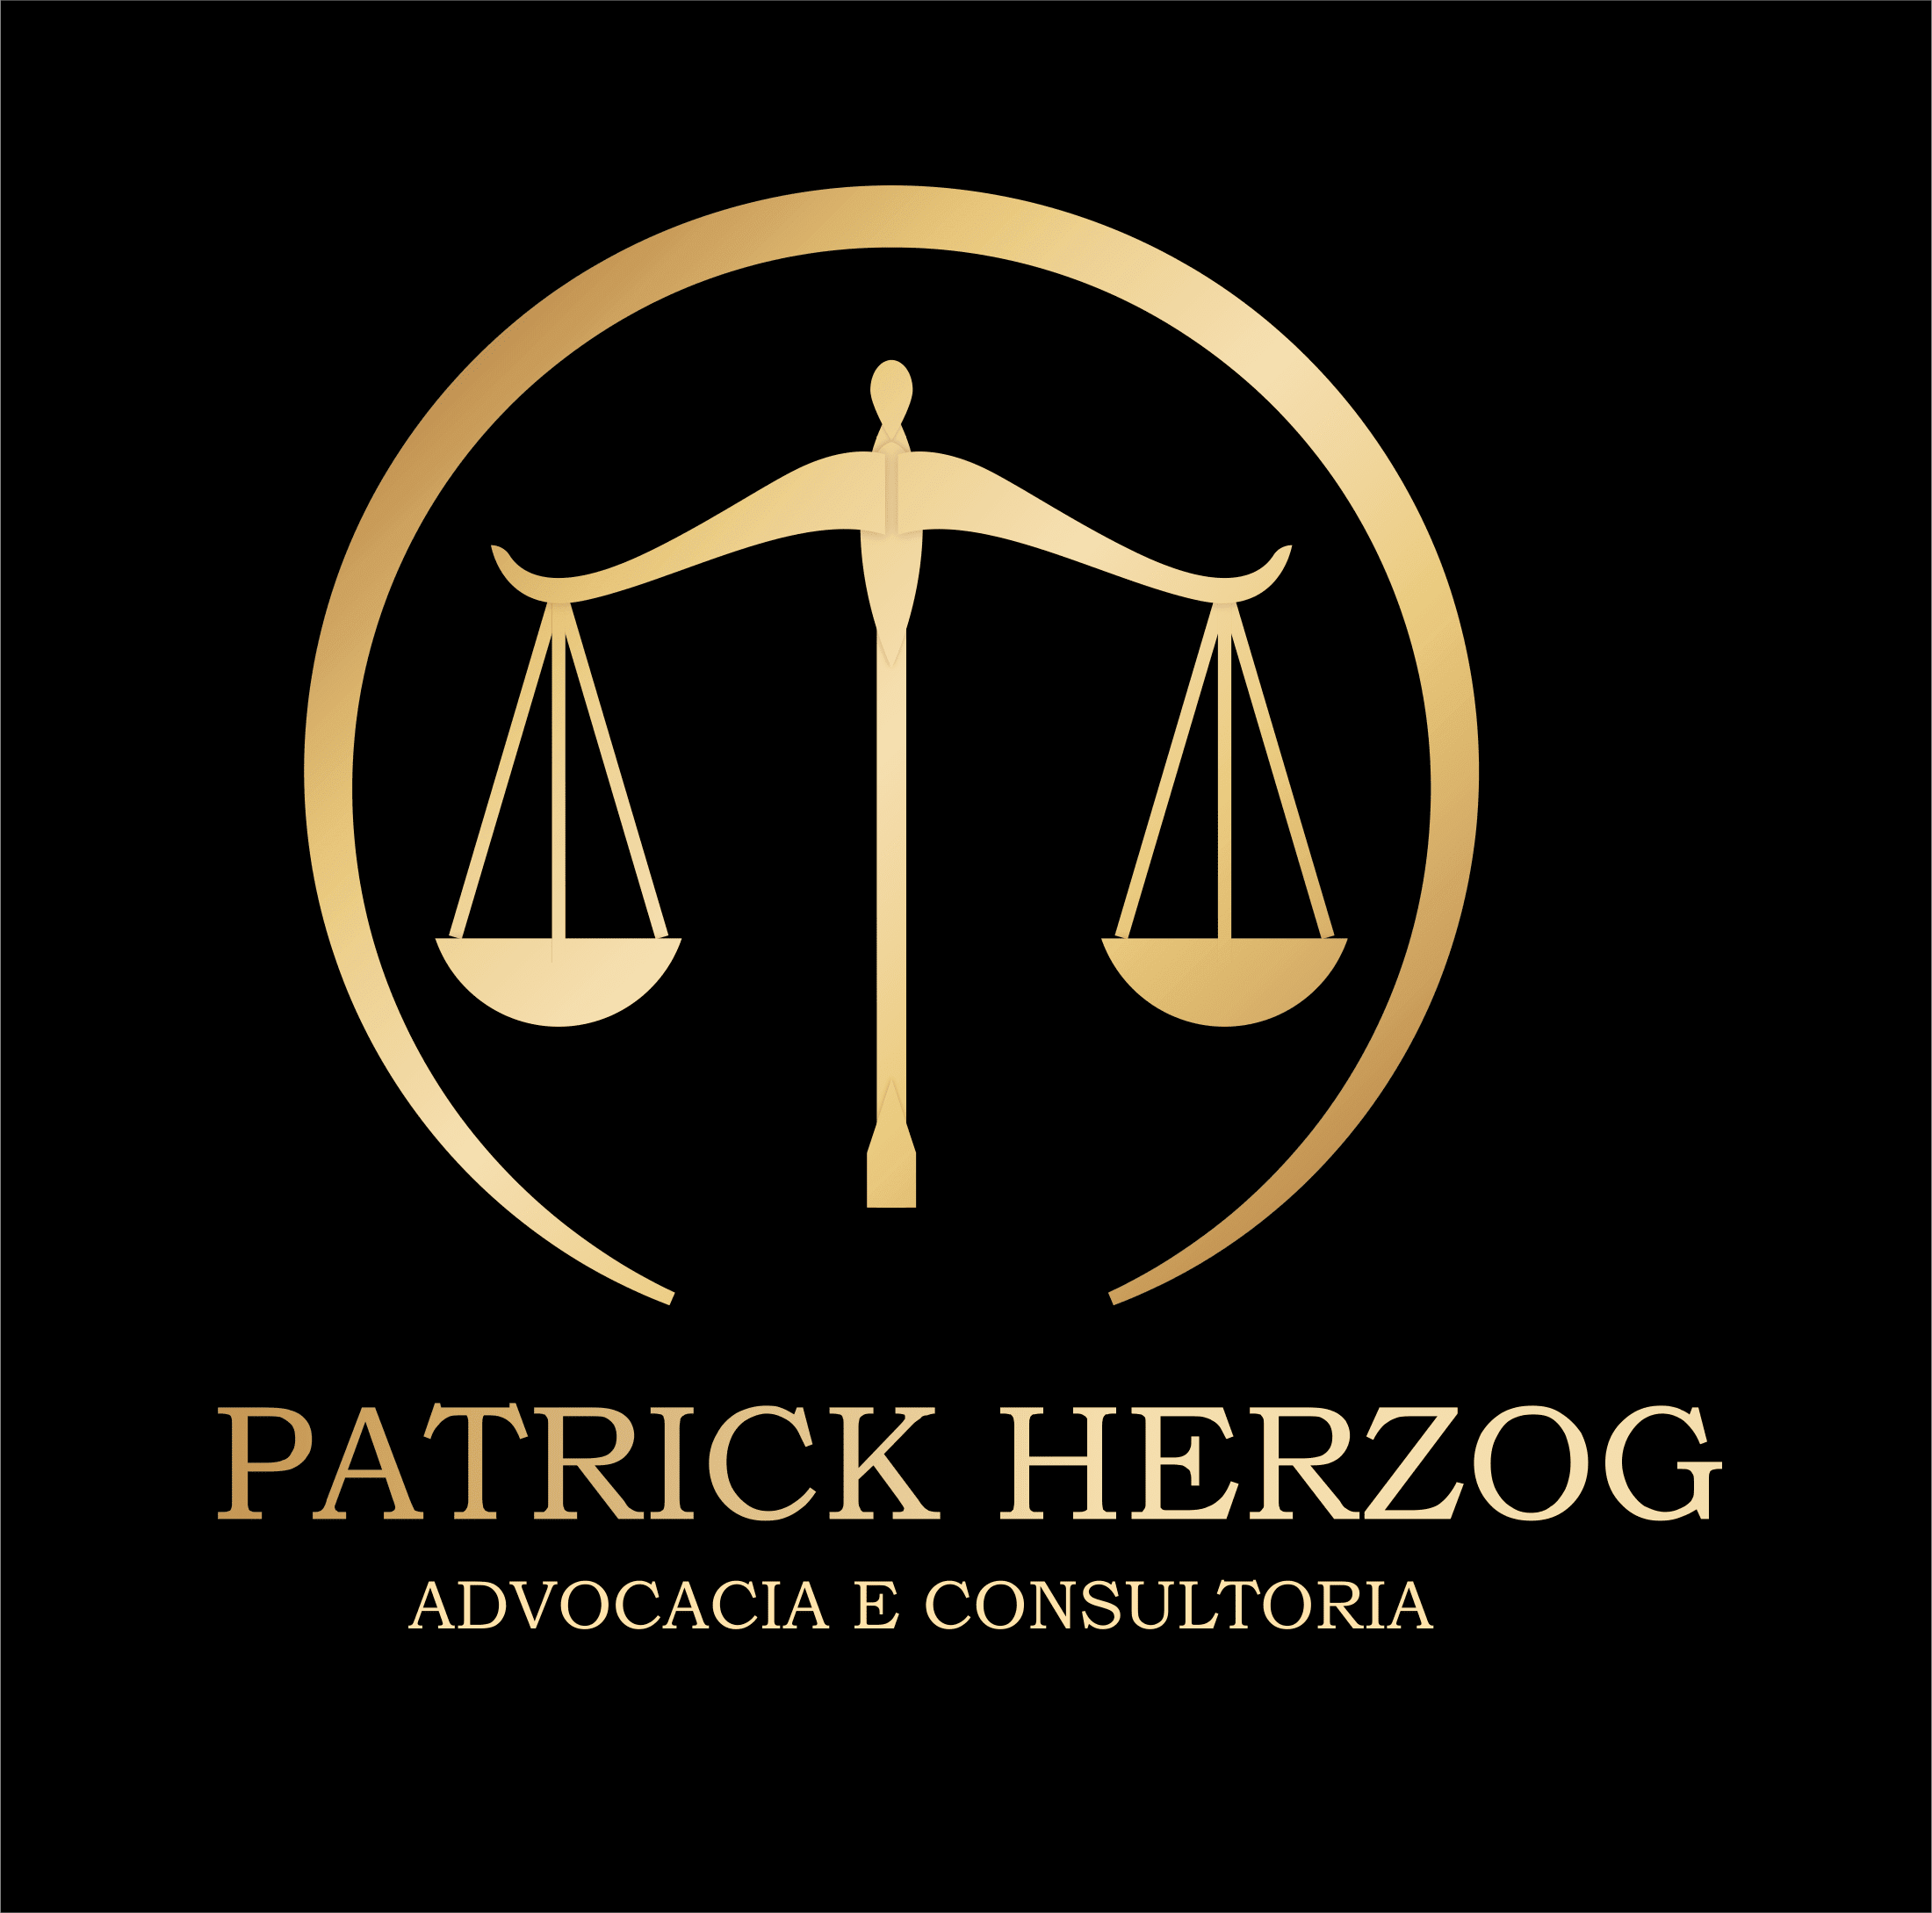 Patrick Herzog Advocacia e Consultoria